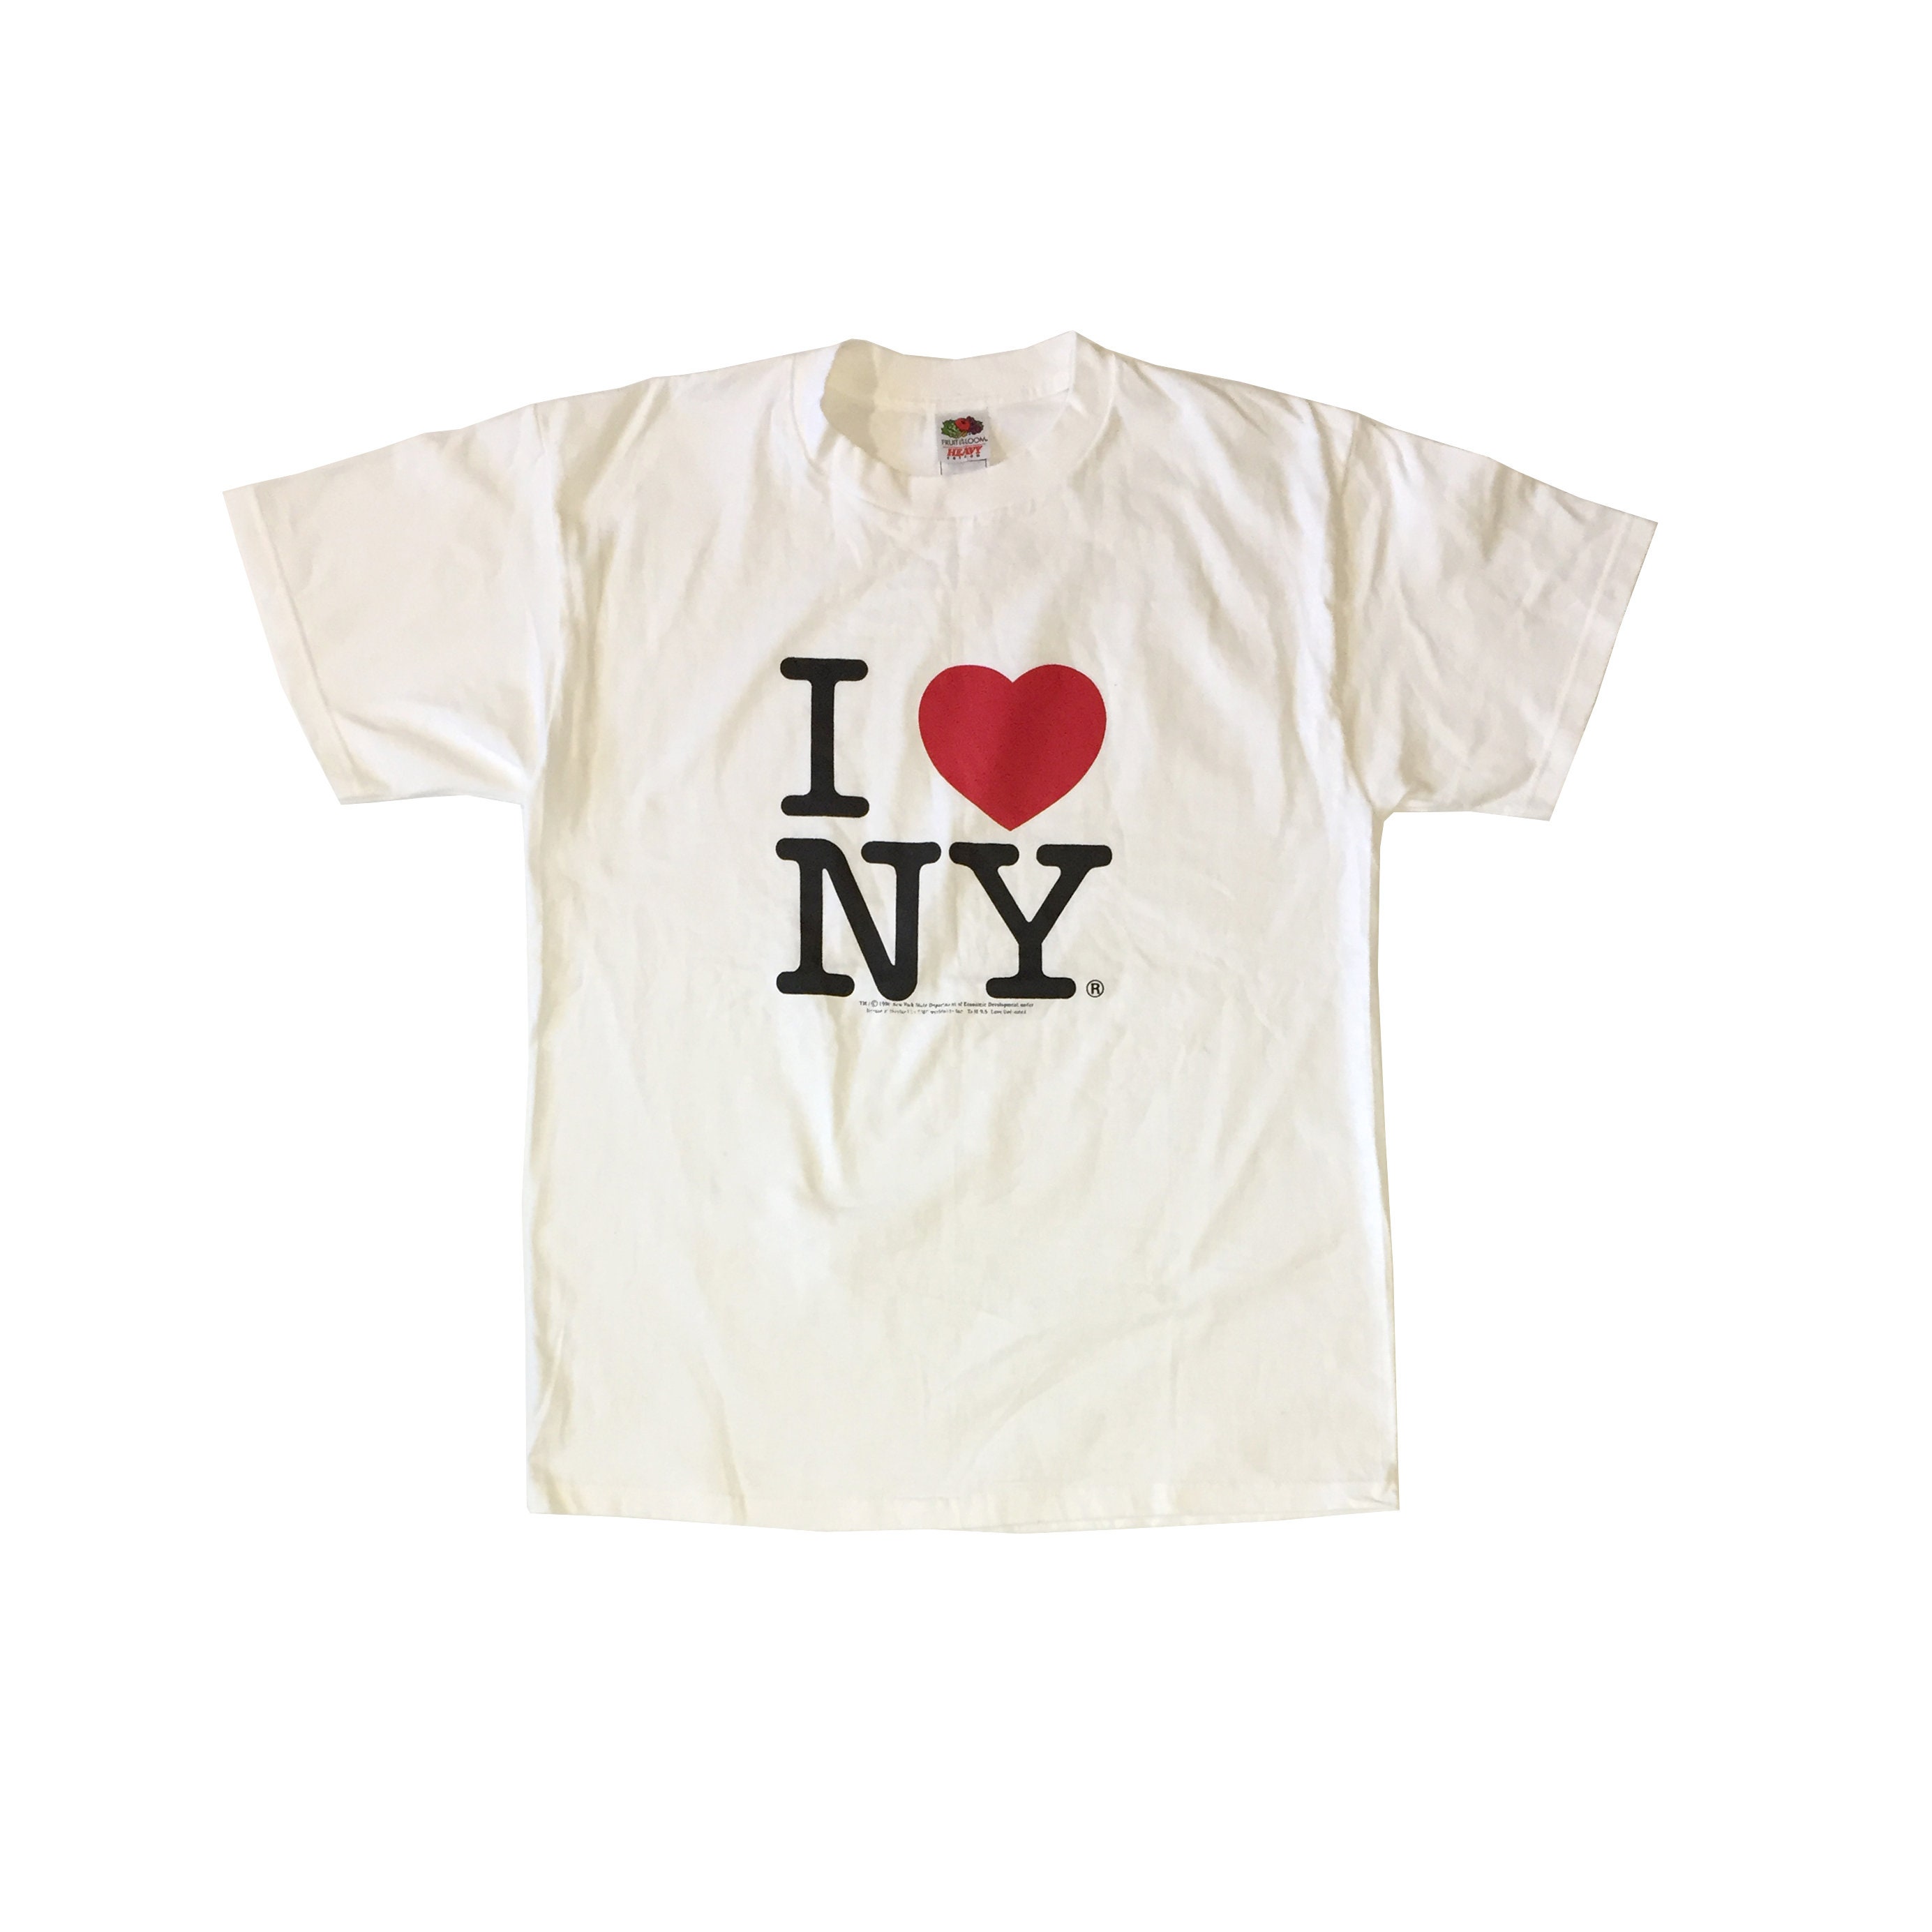 Vintage 90's I love NY T-shirt Rare New York City Souvenir I Heart 